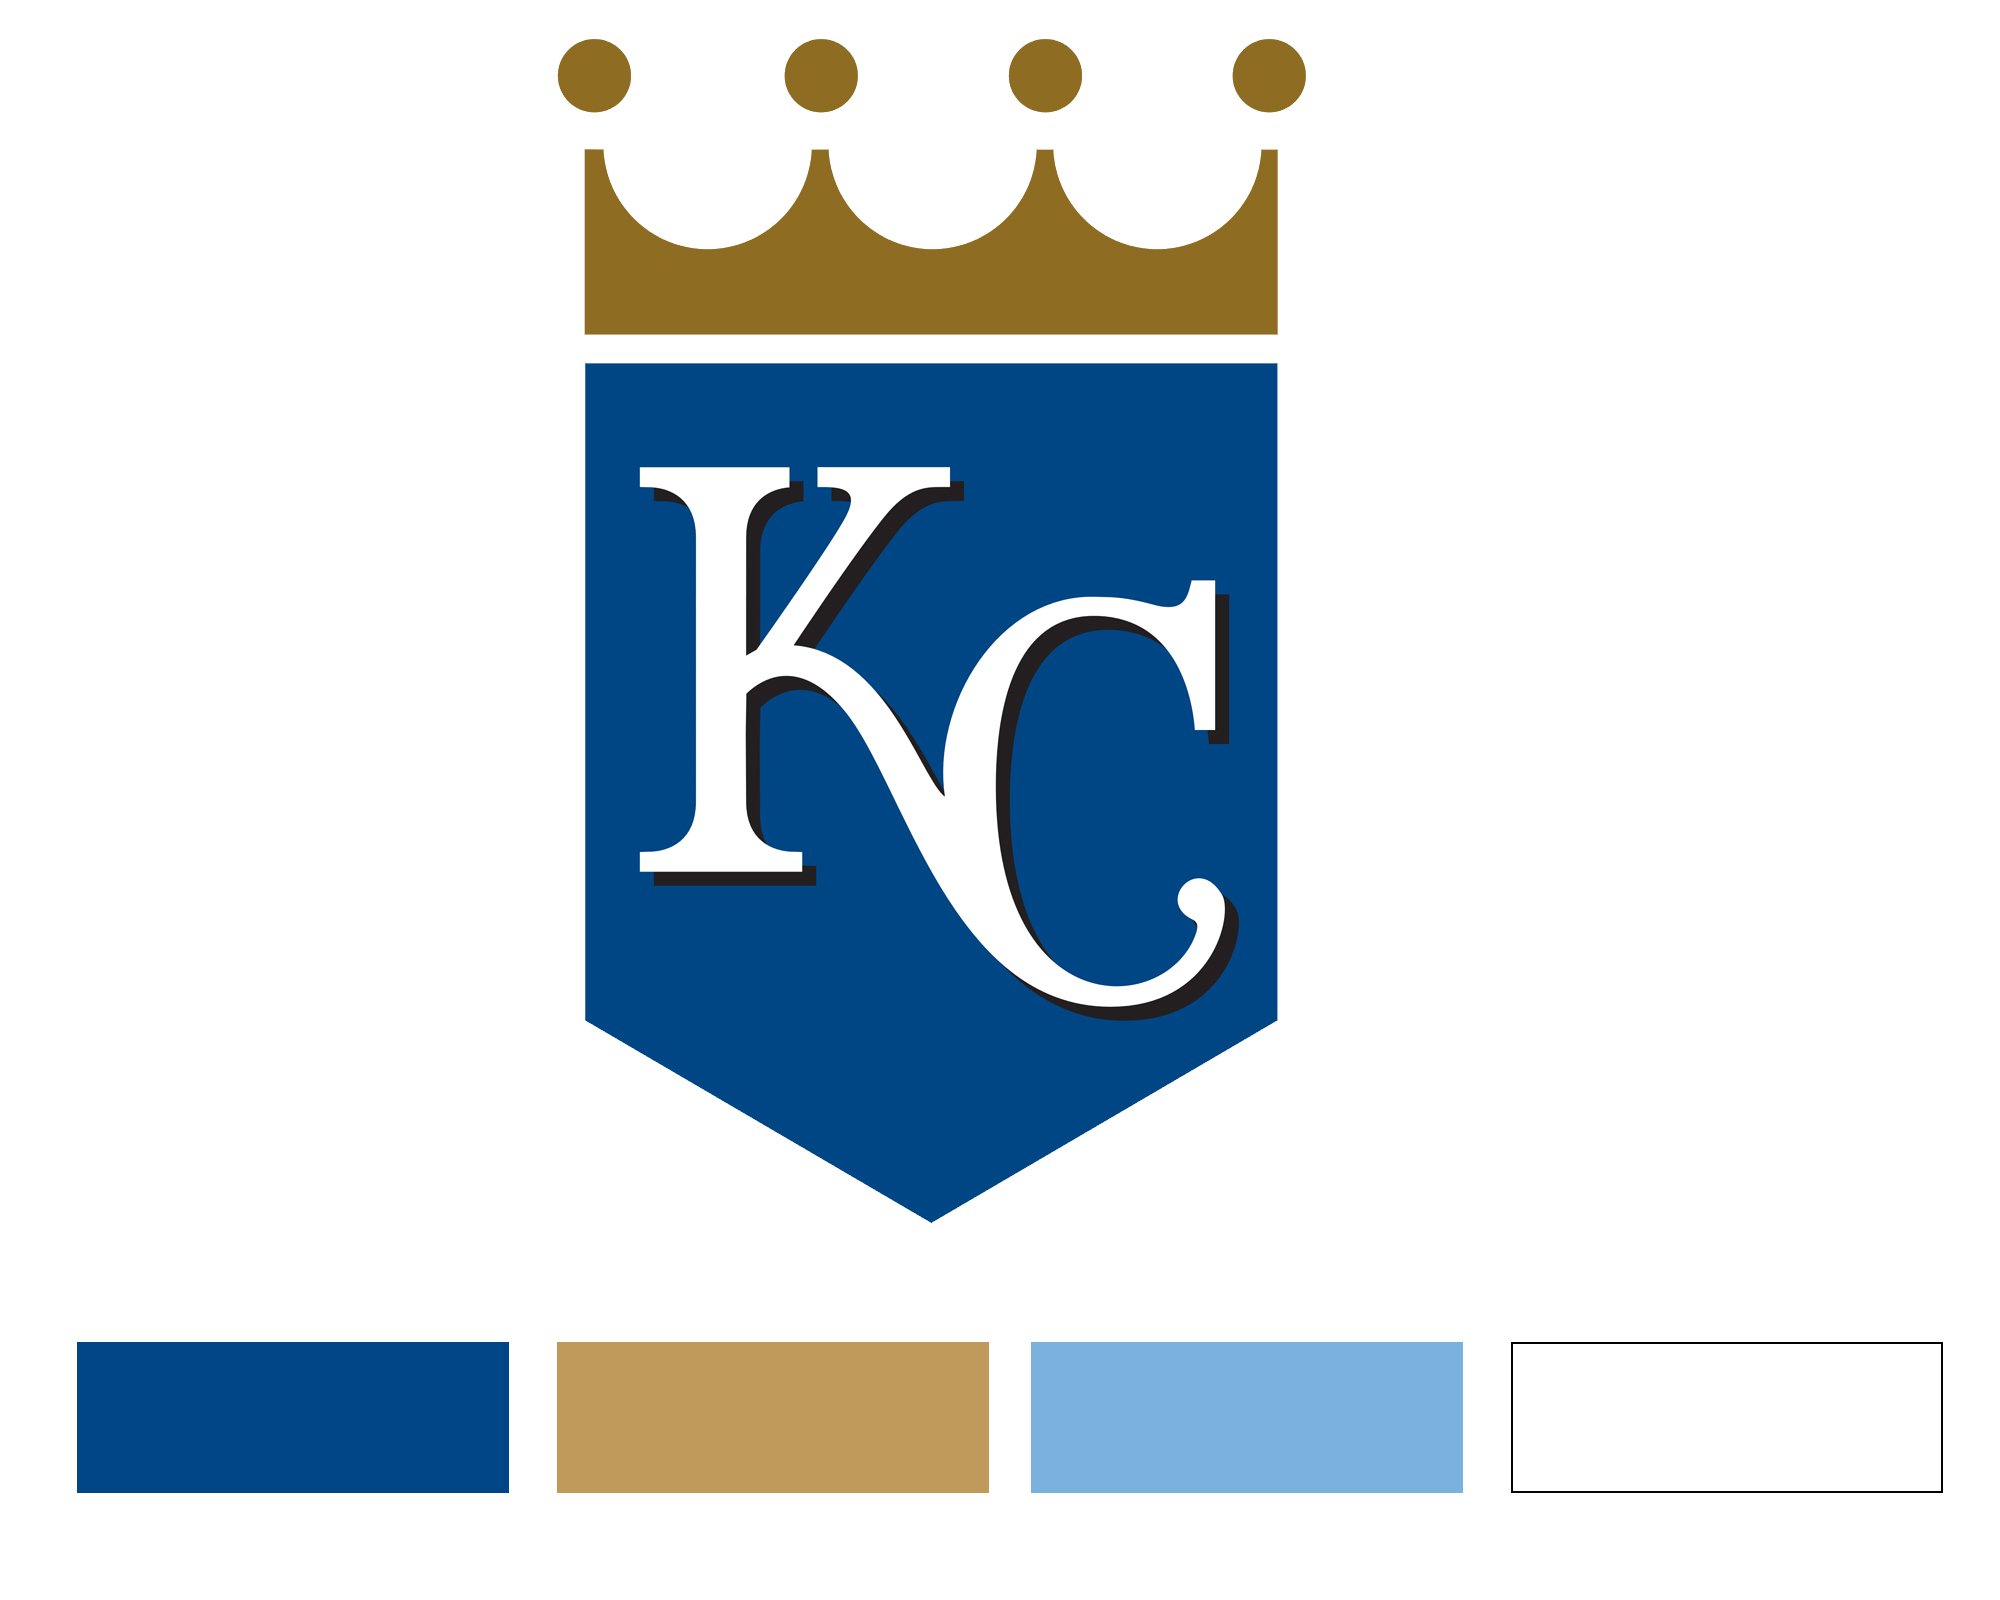 Kansas City Royals team name origin